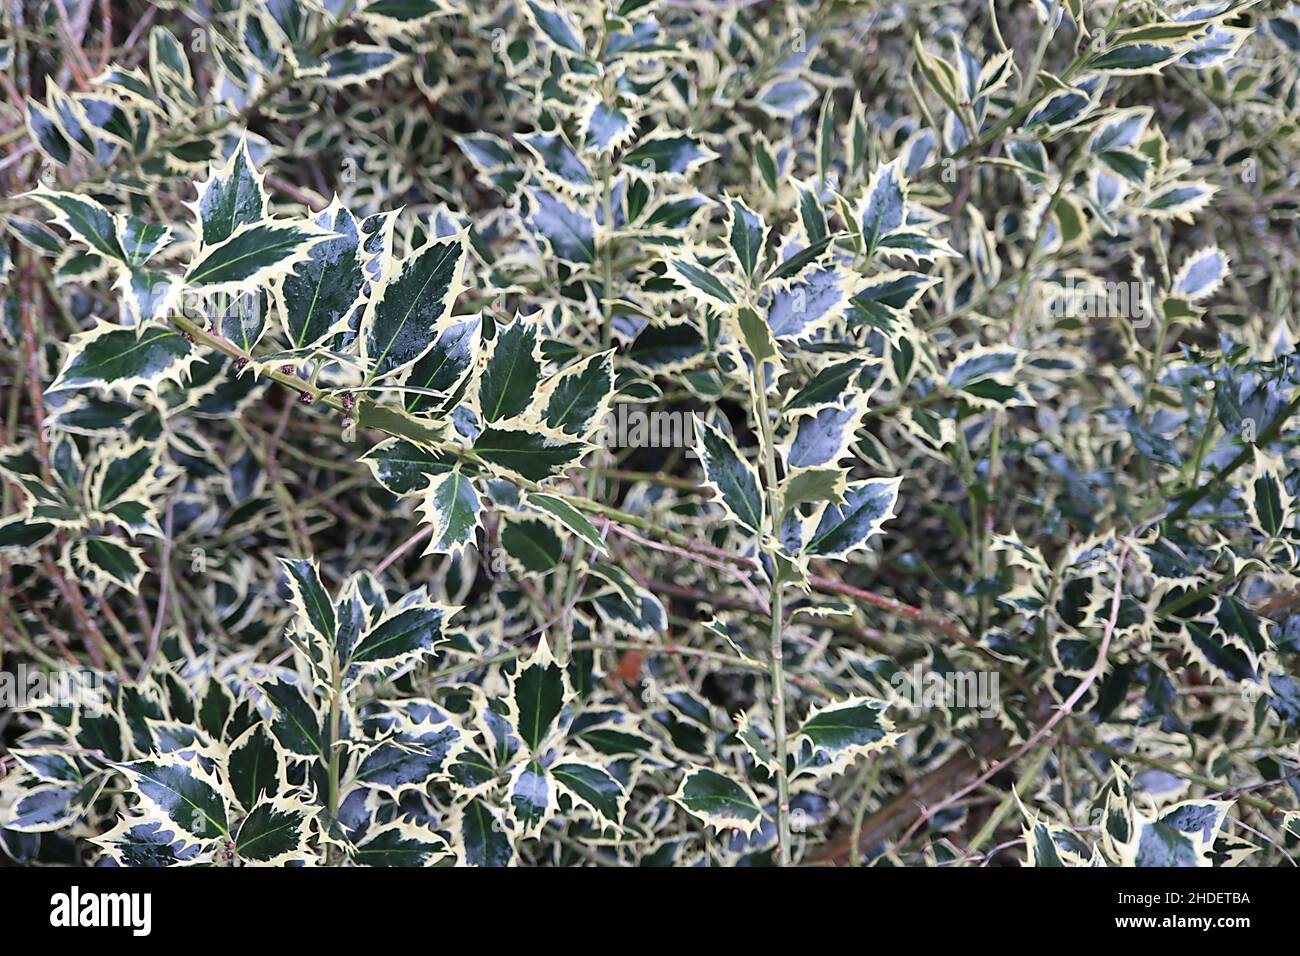 Ilex aquifolium Elgantissima holly Elgantissima – follaje denso con hojas de color verde oscuro, costillas de color verde pálido y márgenes de crema espesa, enero, Inglaterra Foto de stock